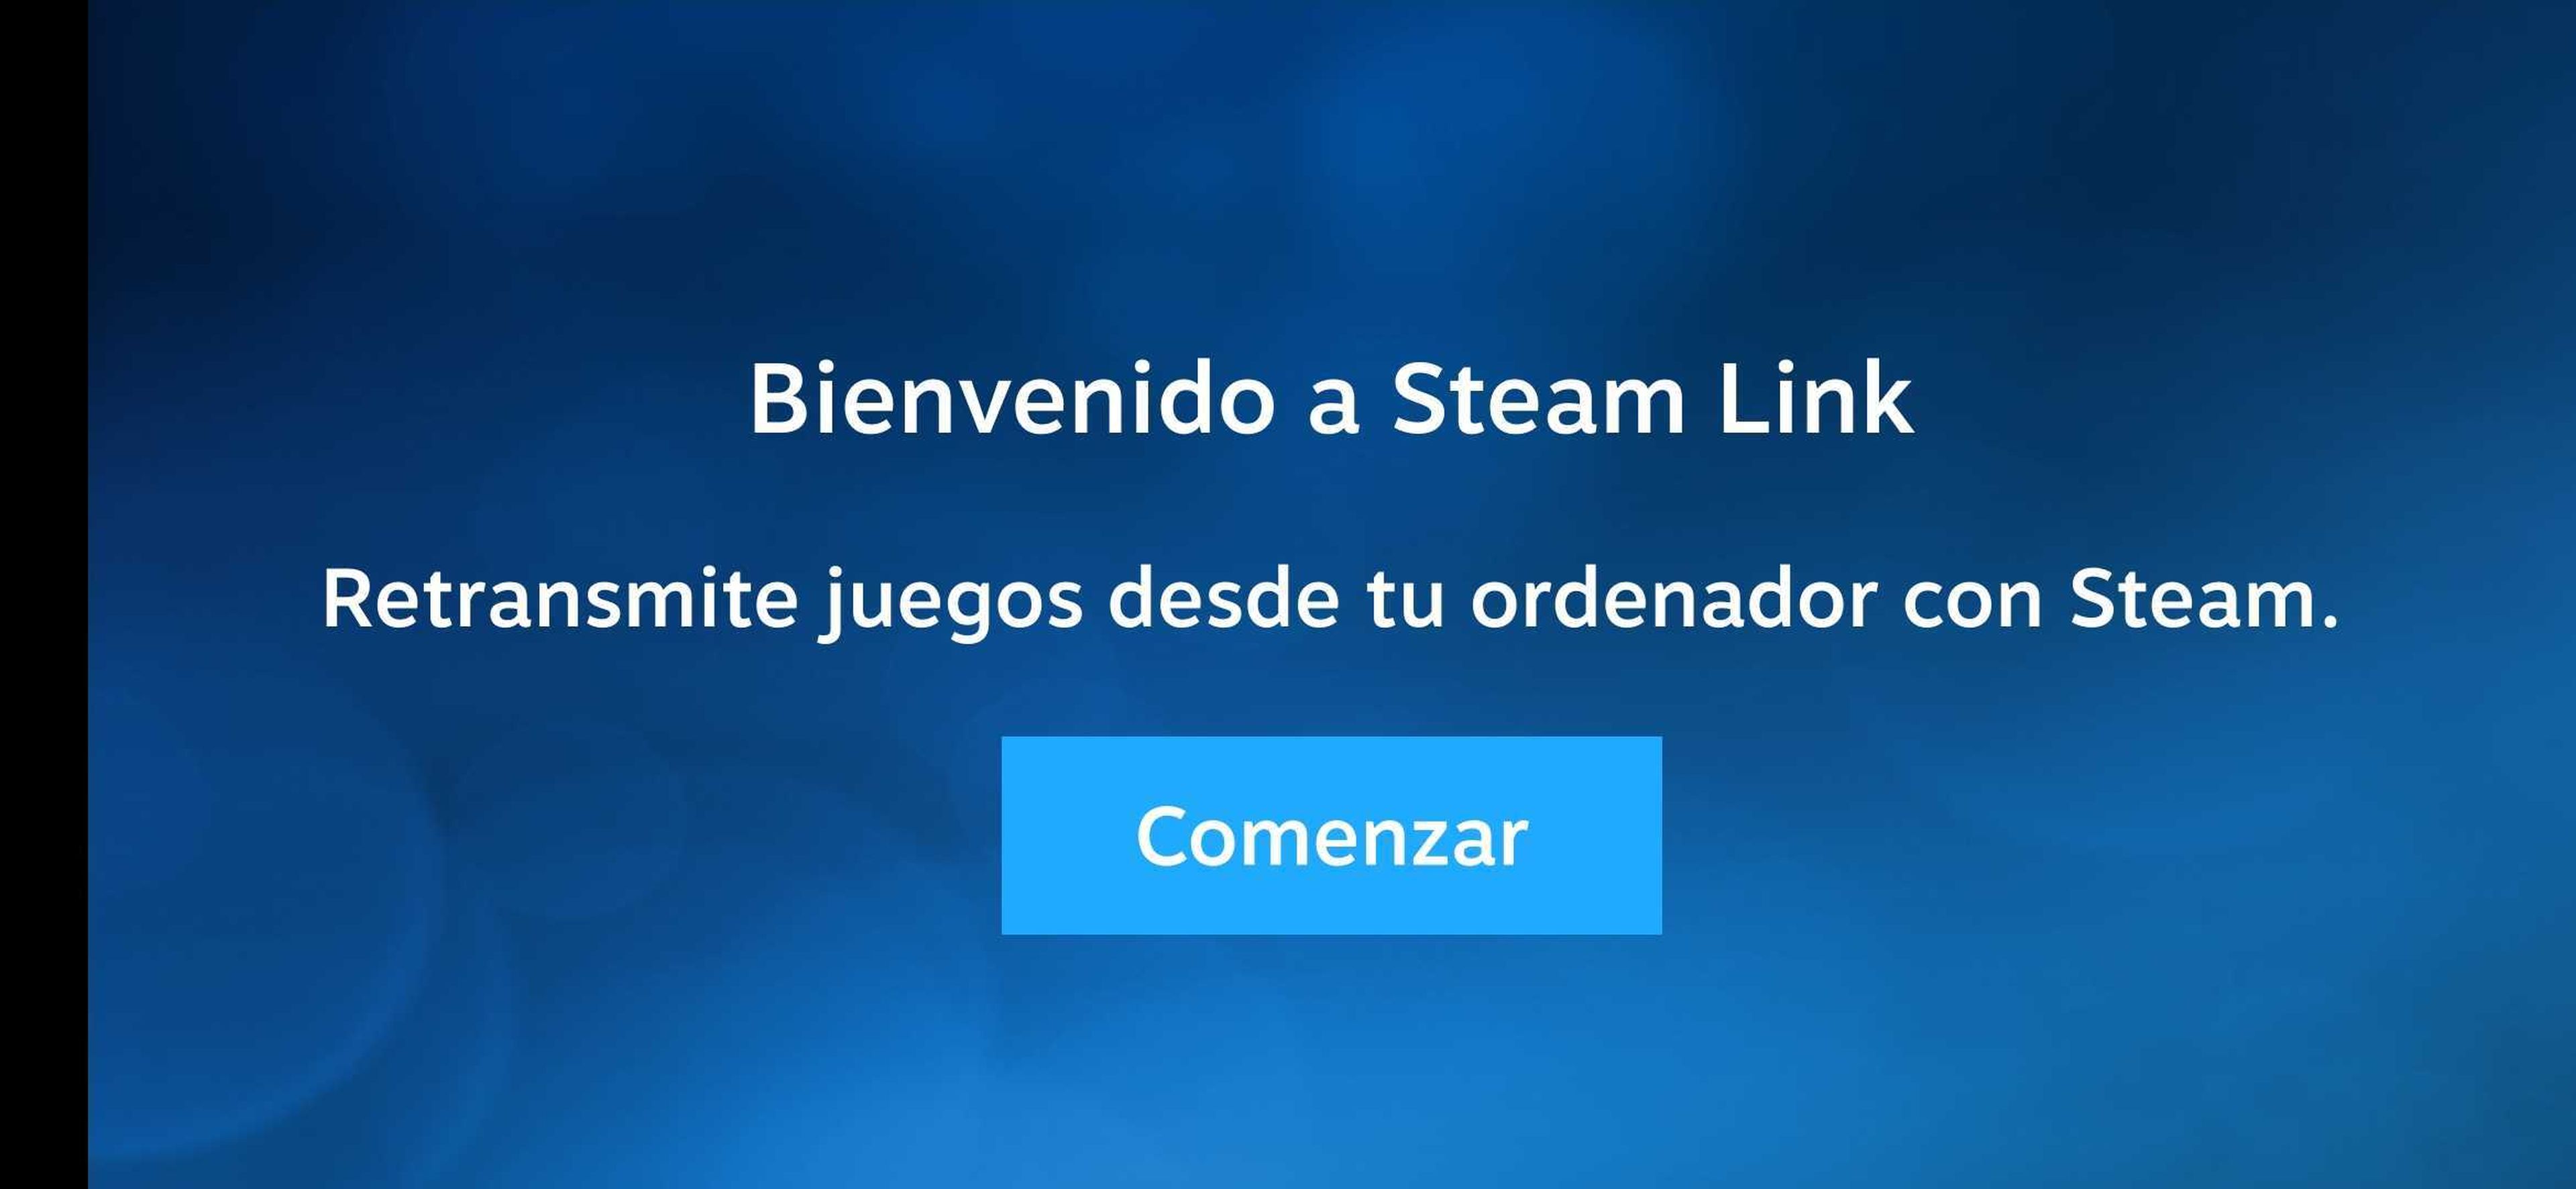 Steam link